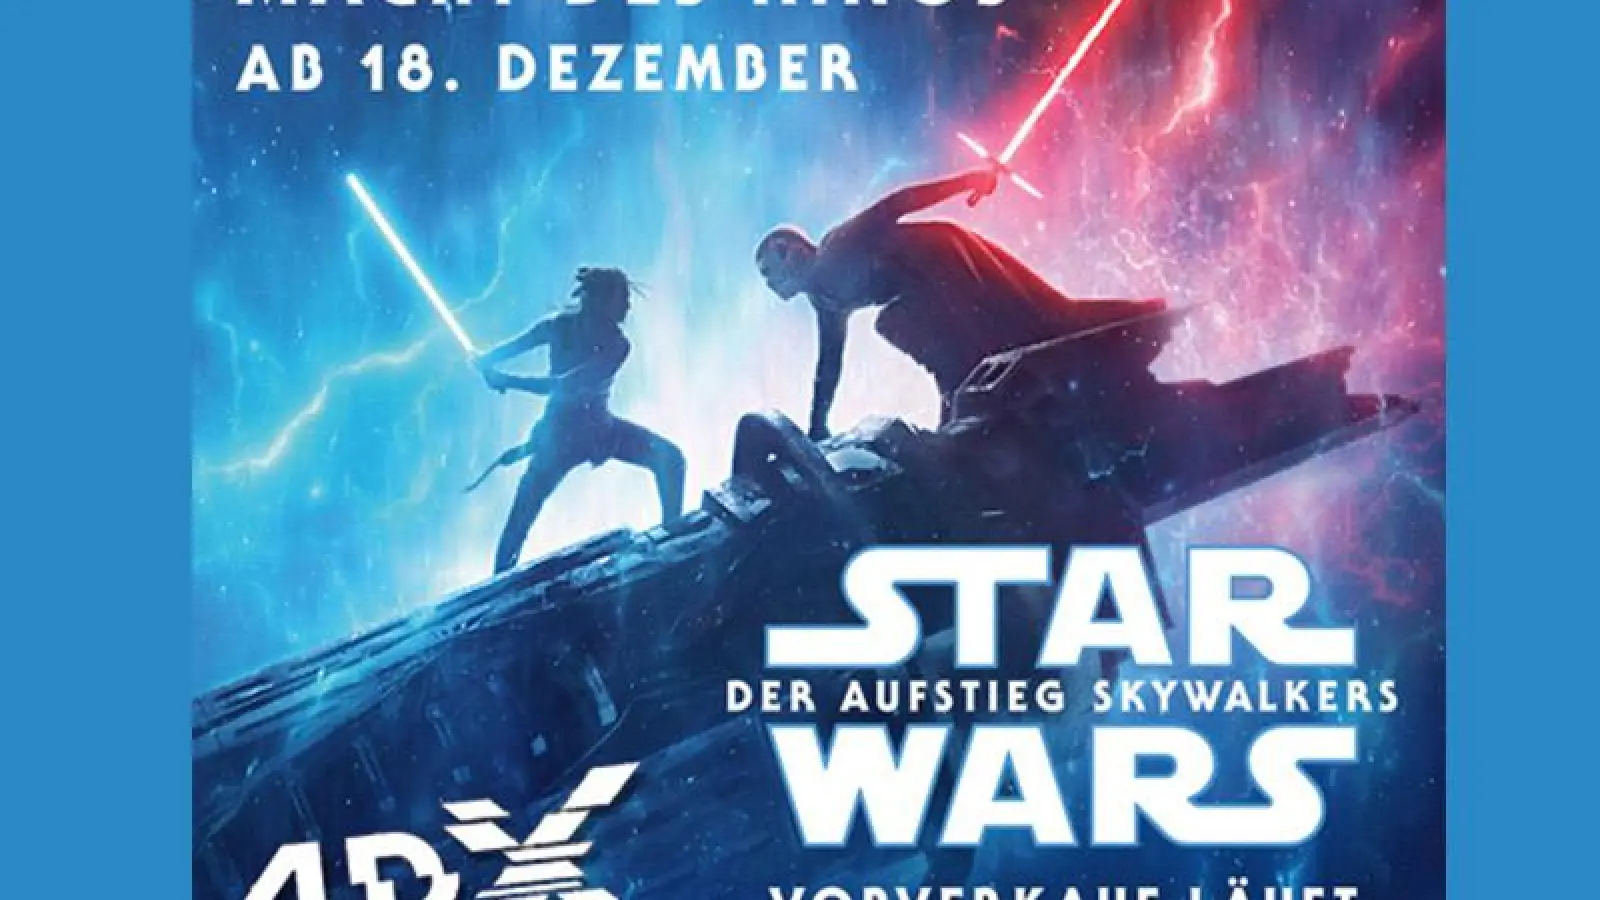 Gewinnspiel: Gewinne 1 x 2 Tickets für die Premiere von Star Wars (beendet) (Foto: inBayreuth.de)